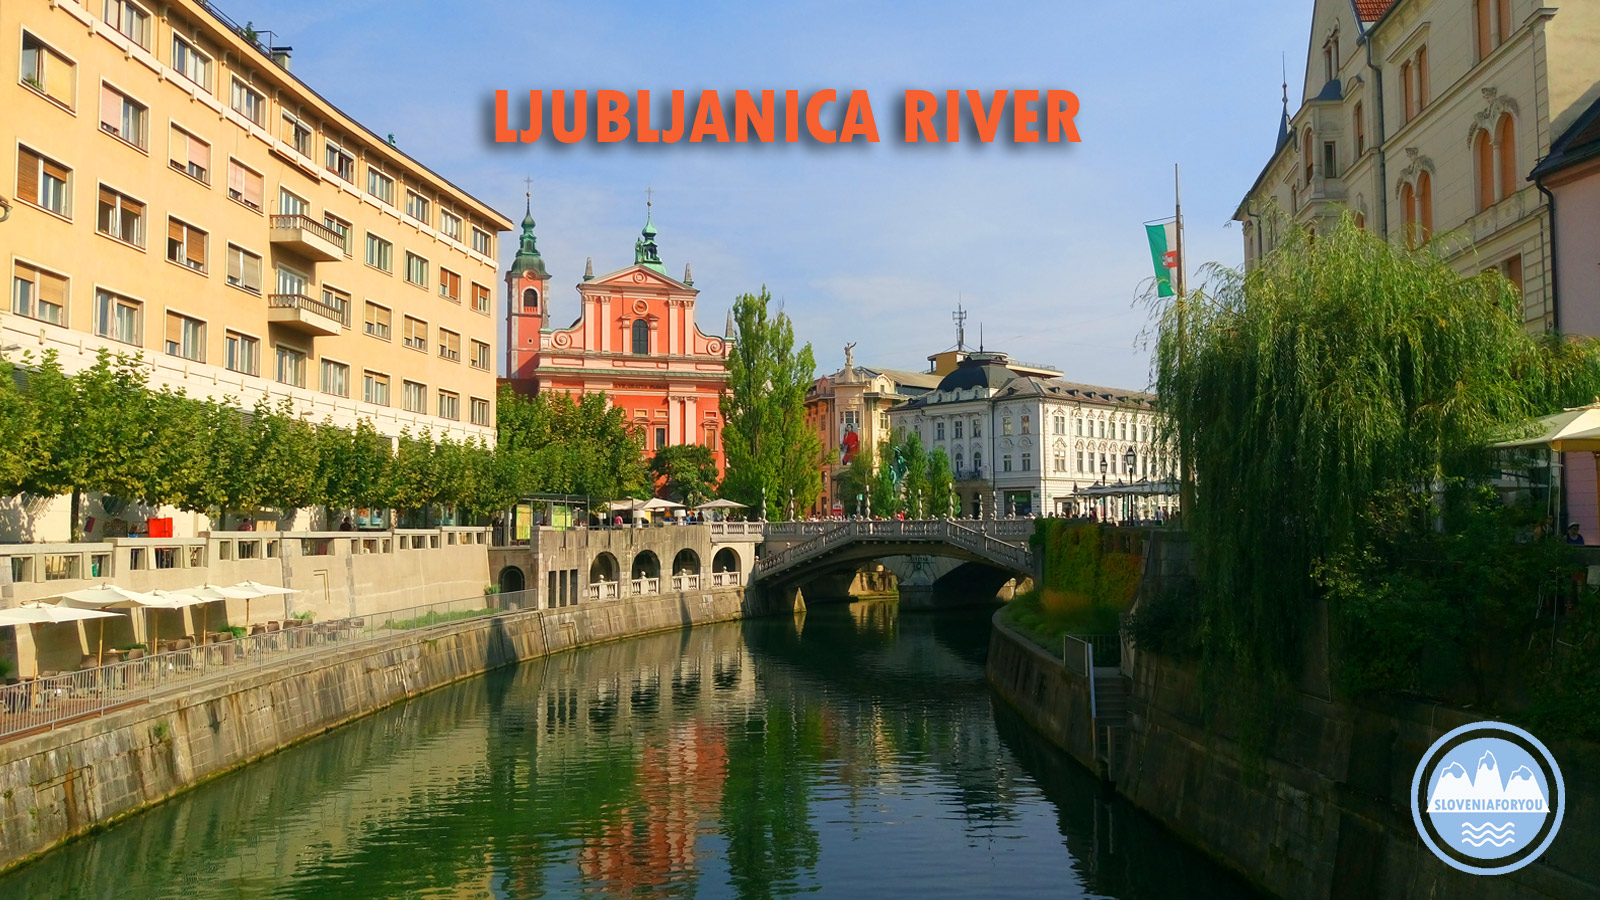 Ljubljanica River_Sloveniaforyou